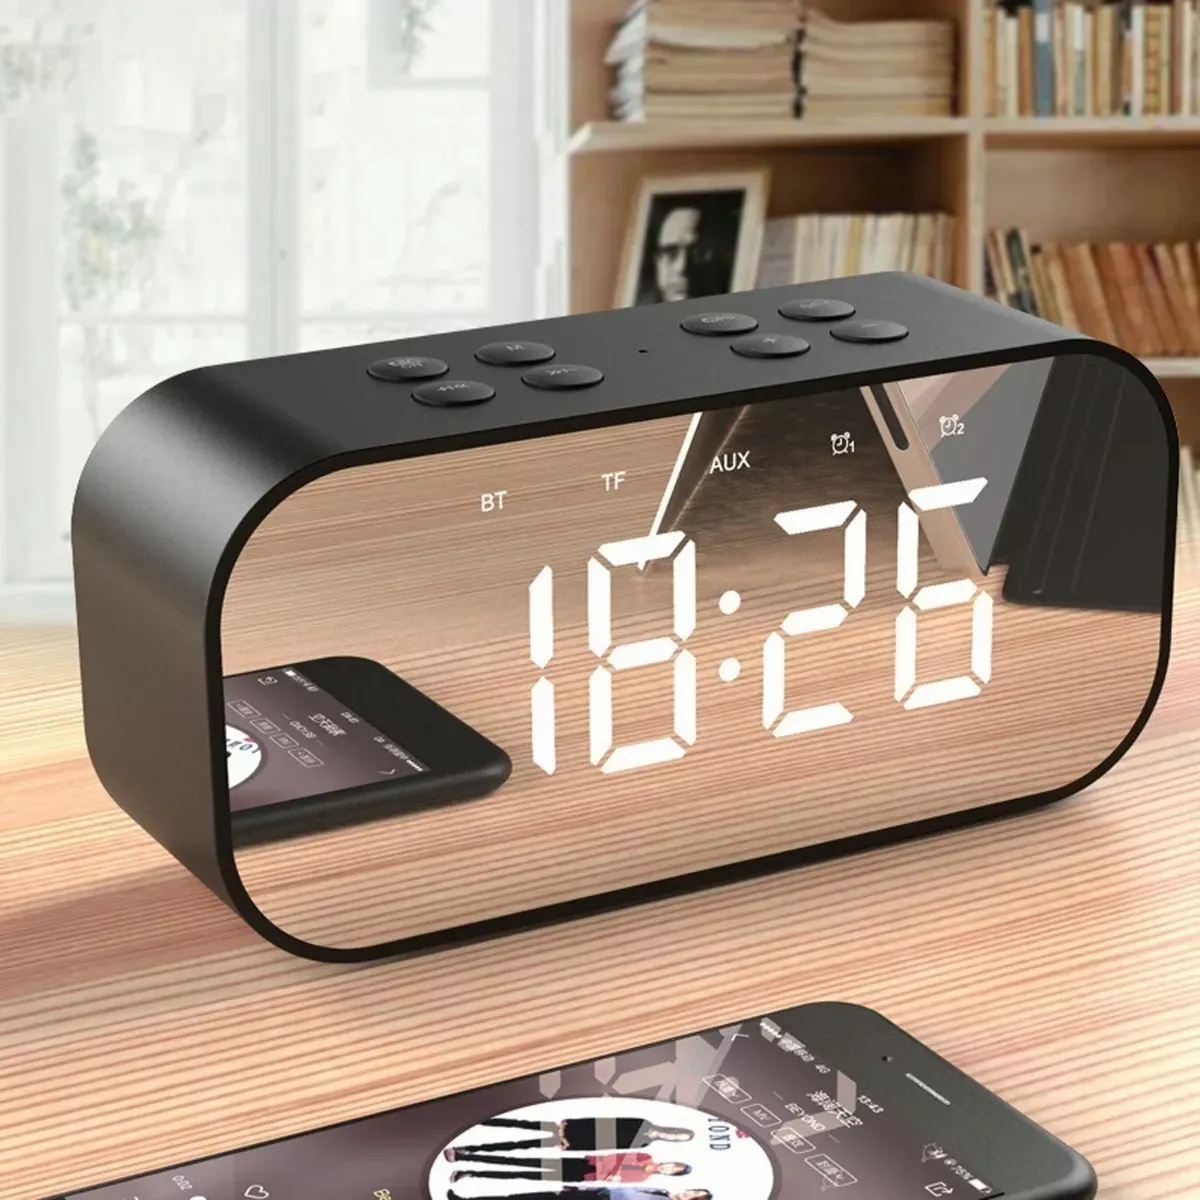 Reloj Despertador Digital C/bocina/bluetooth/radio Fm, Negro